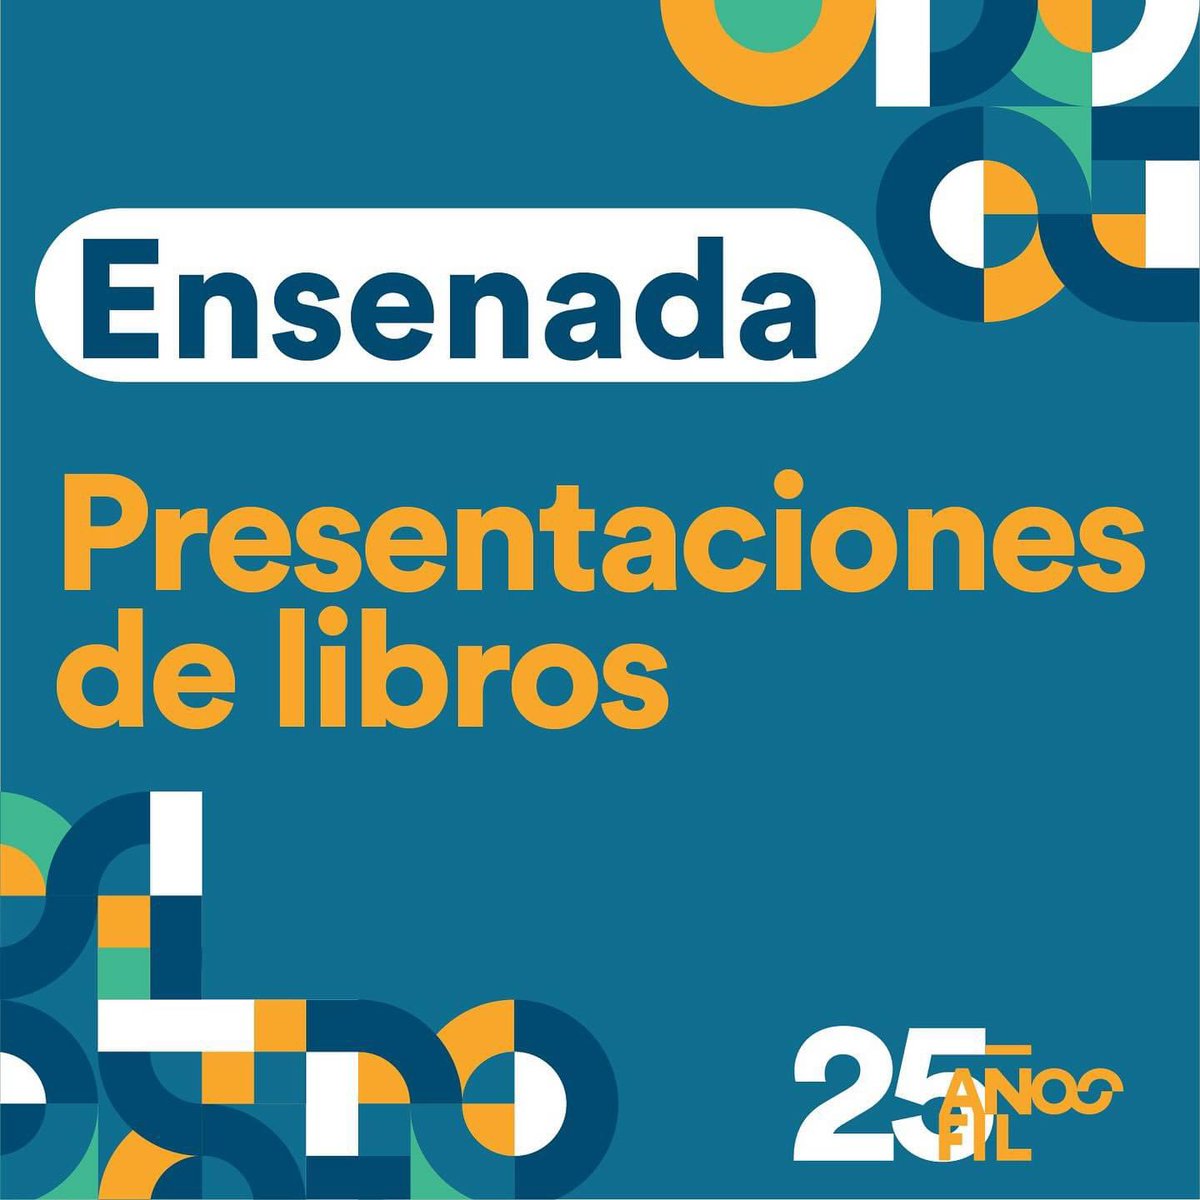 🌊📖 ¡Ensenada! Sé parte del 25 aniversario de la FIL UABC y acompáñanos en las presentaciones de libro en compañía de los autores y autoras. 📆 Te esperamos del 15 al 18 de marzo en Ventana Al Mar. Encuentra más información en nuestro sitio web 👉 filuabc.mx